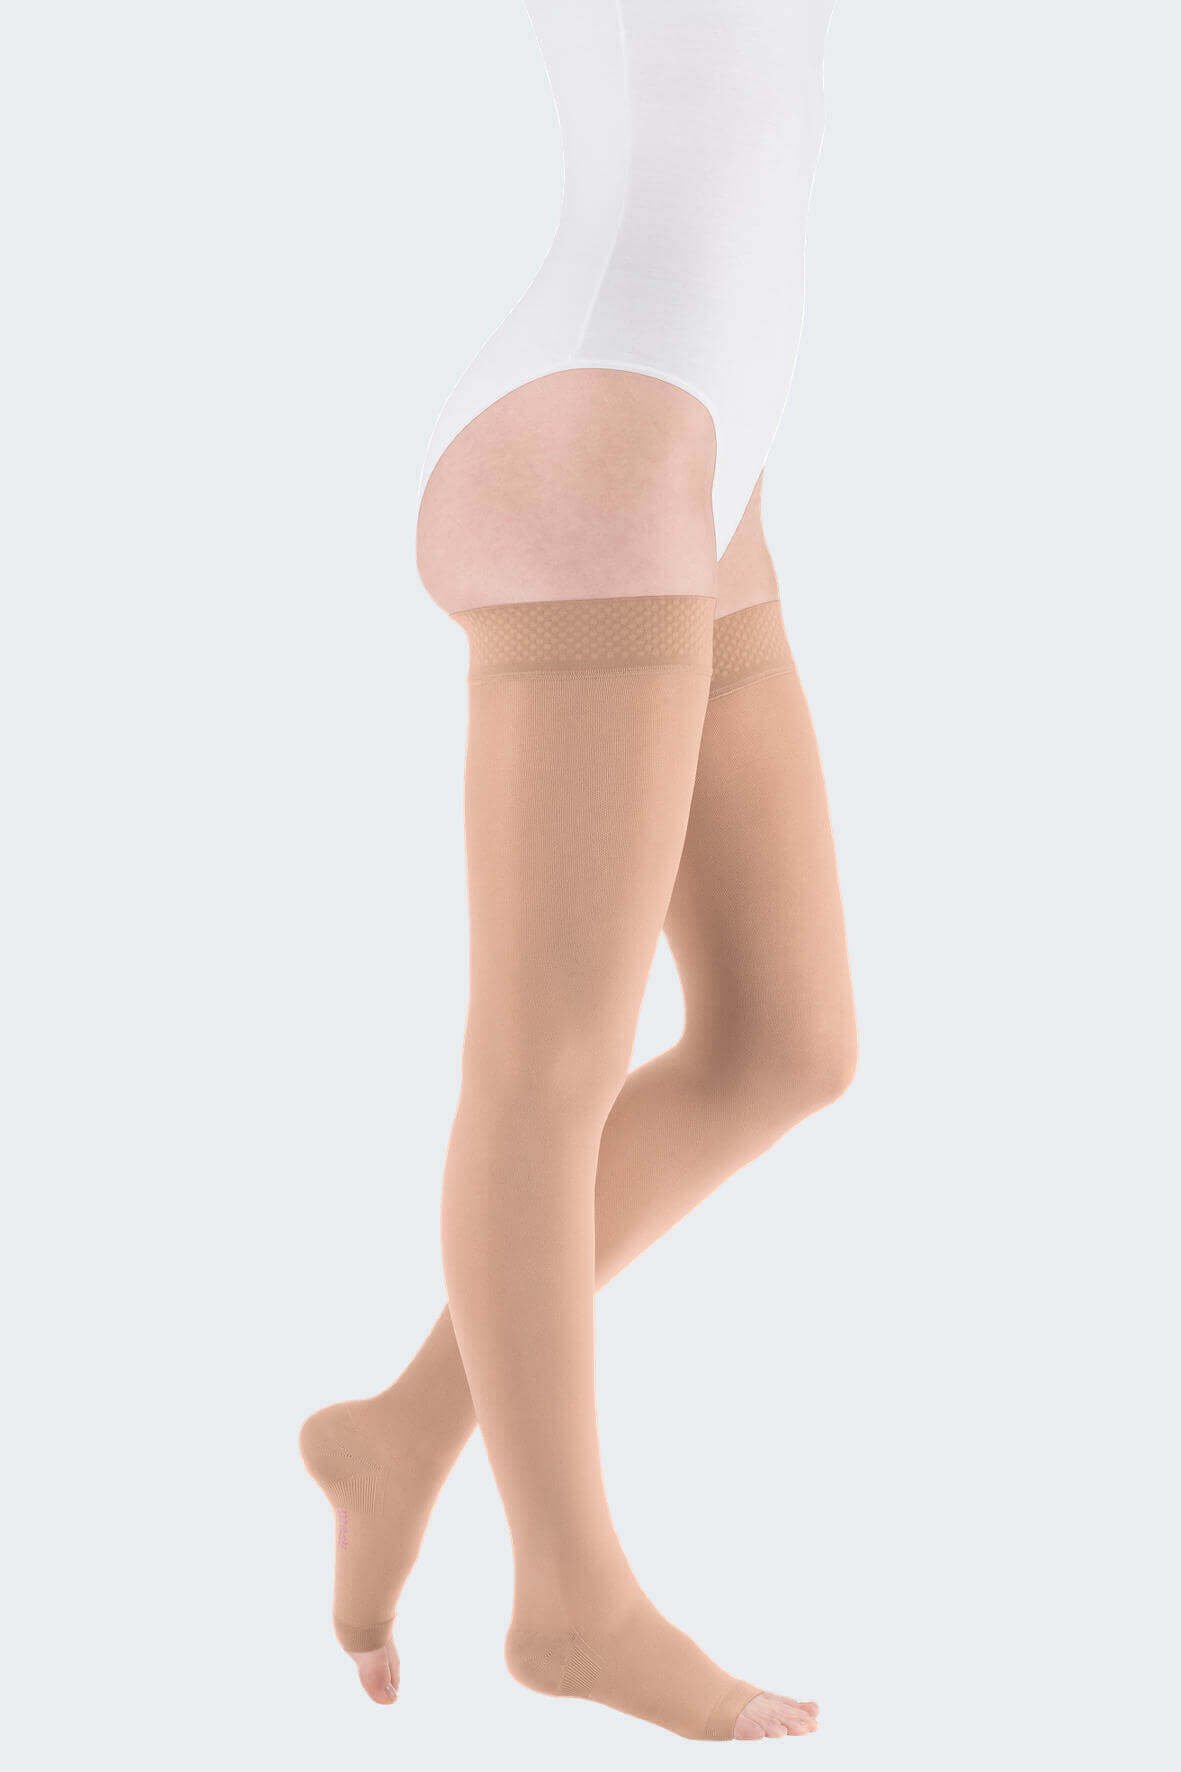 Чулки компрессионные на широкое бедро Medi (Германия) mediven comfort (2 класс компрессии) карамель, короткие, открытый носок, размер 1